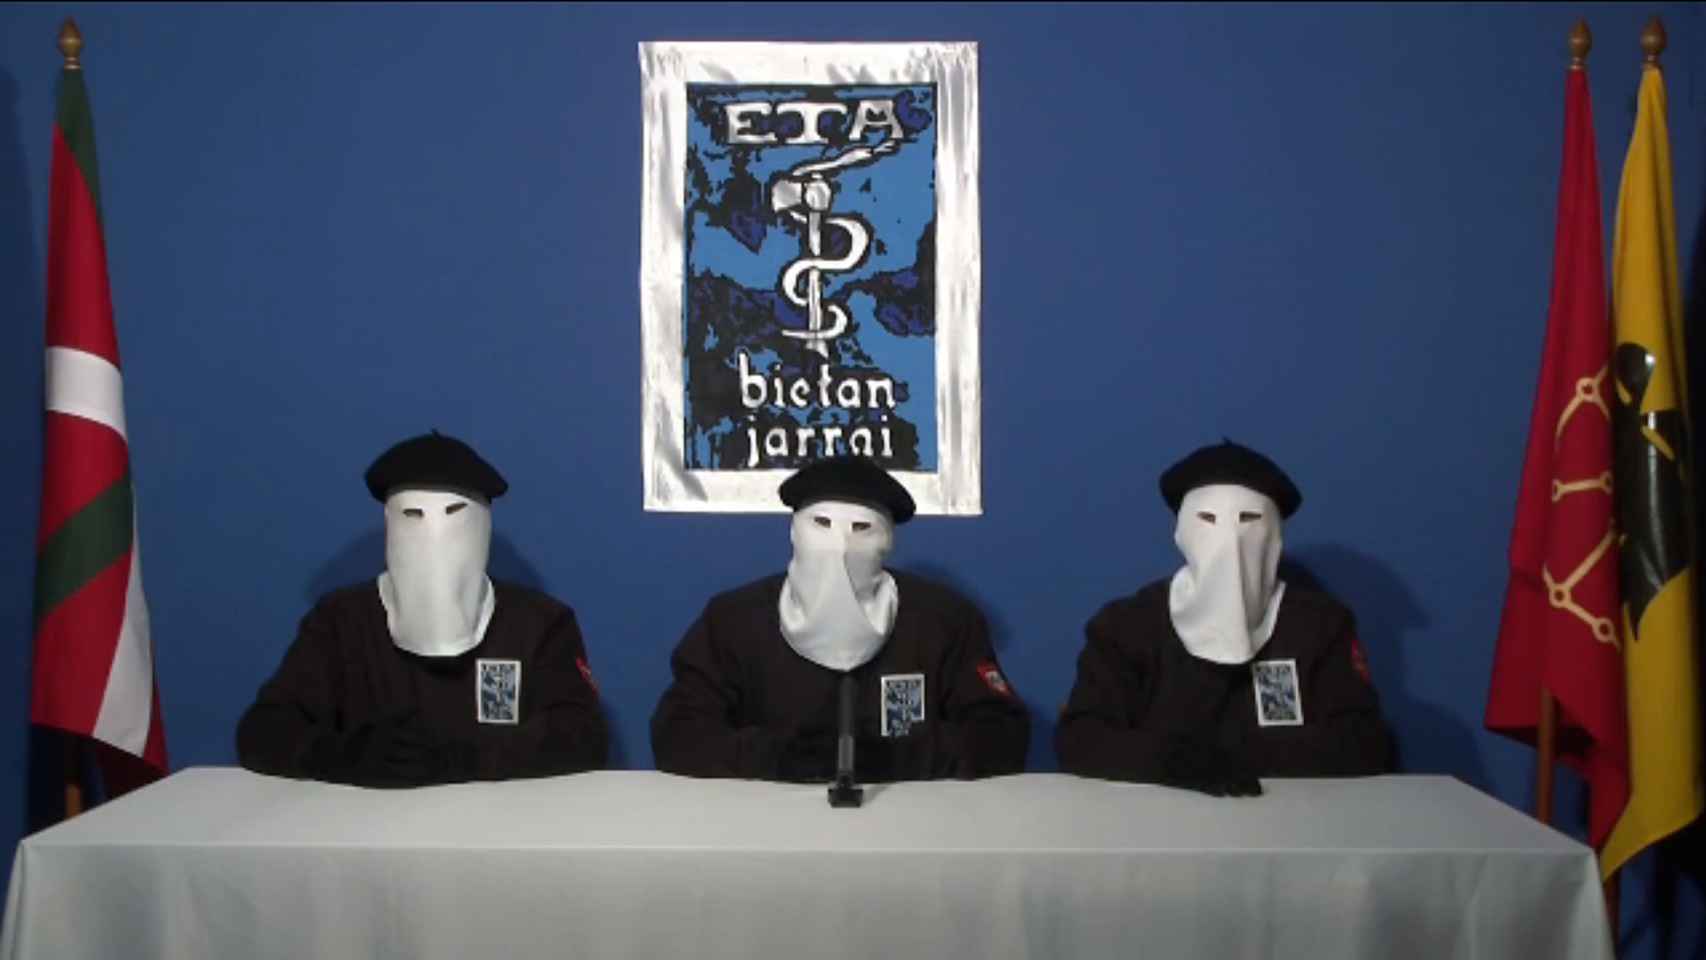 La banda terrorista ETA extorsionó a empresarios durante décadas para financiarse.